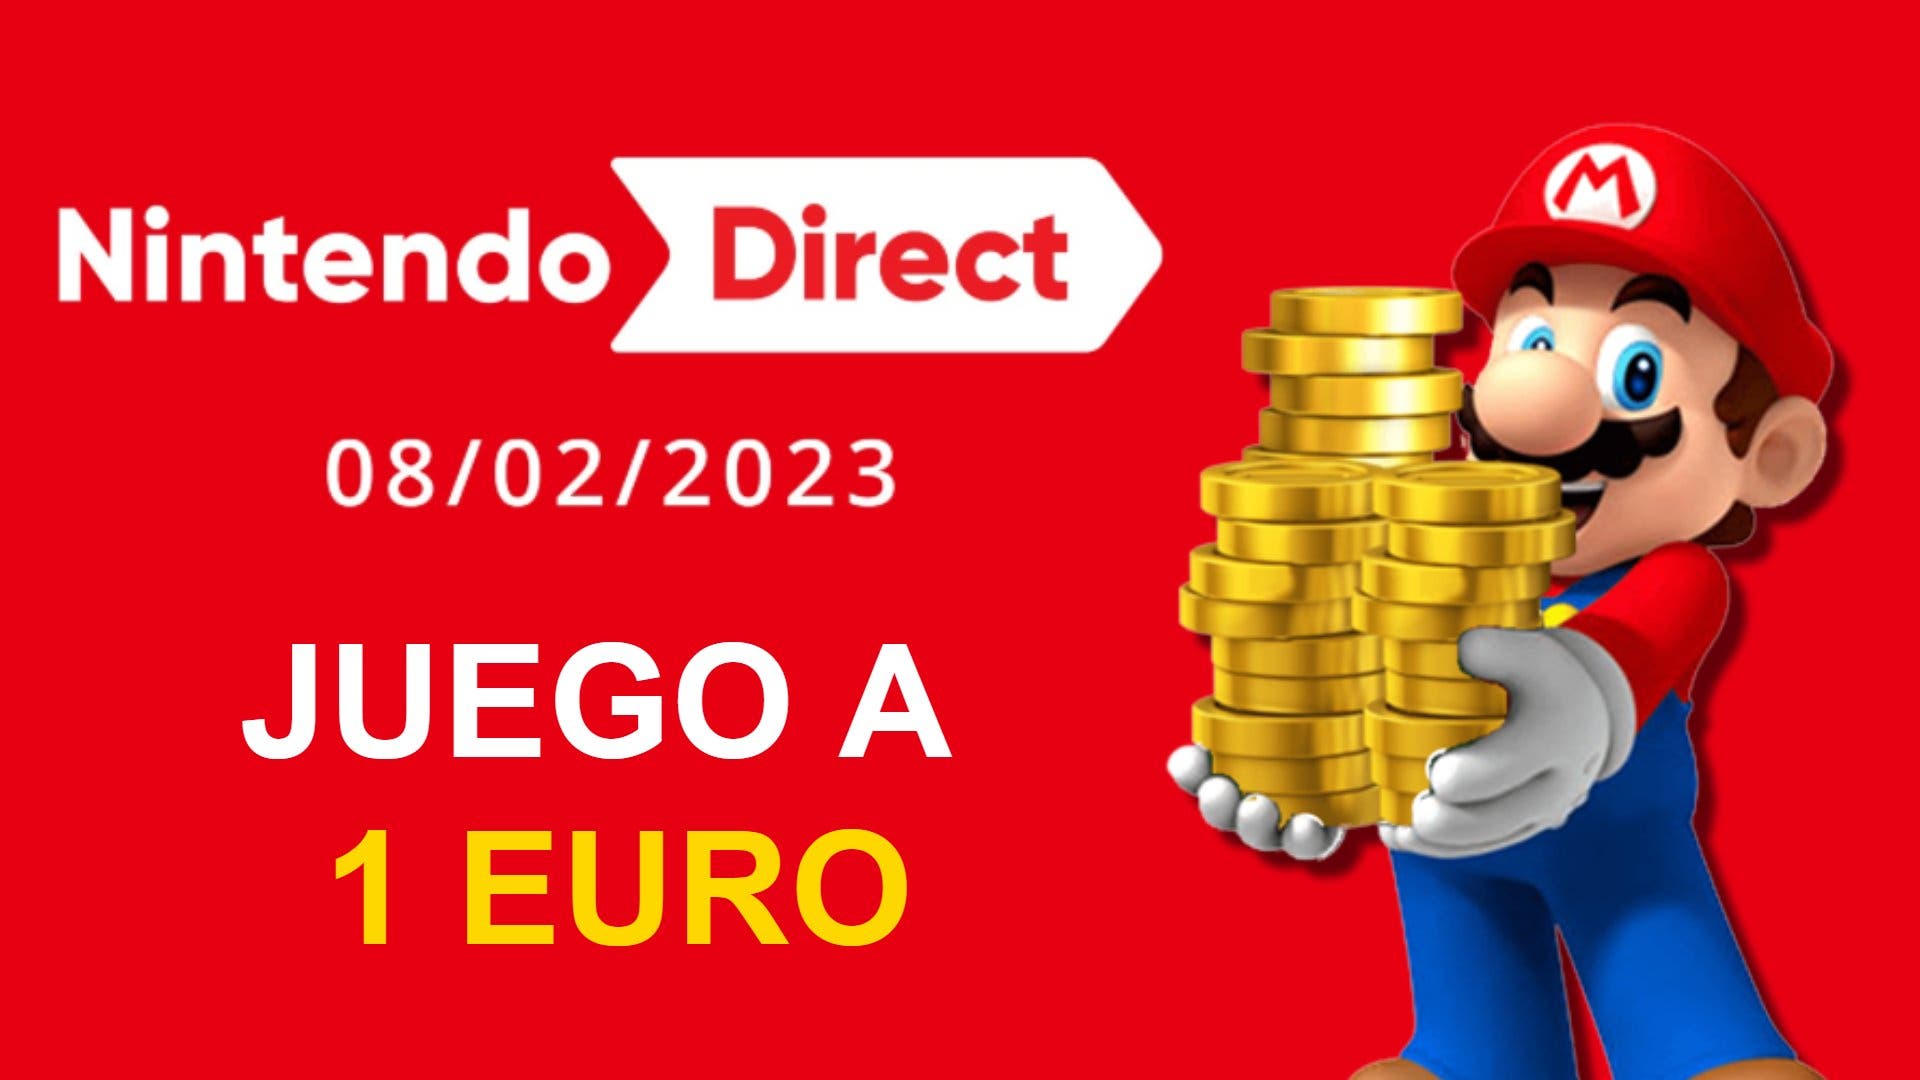 Este juego anunciado en el Nintendo Direct ya está a menos de 1 euro